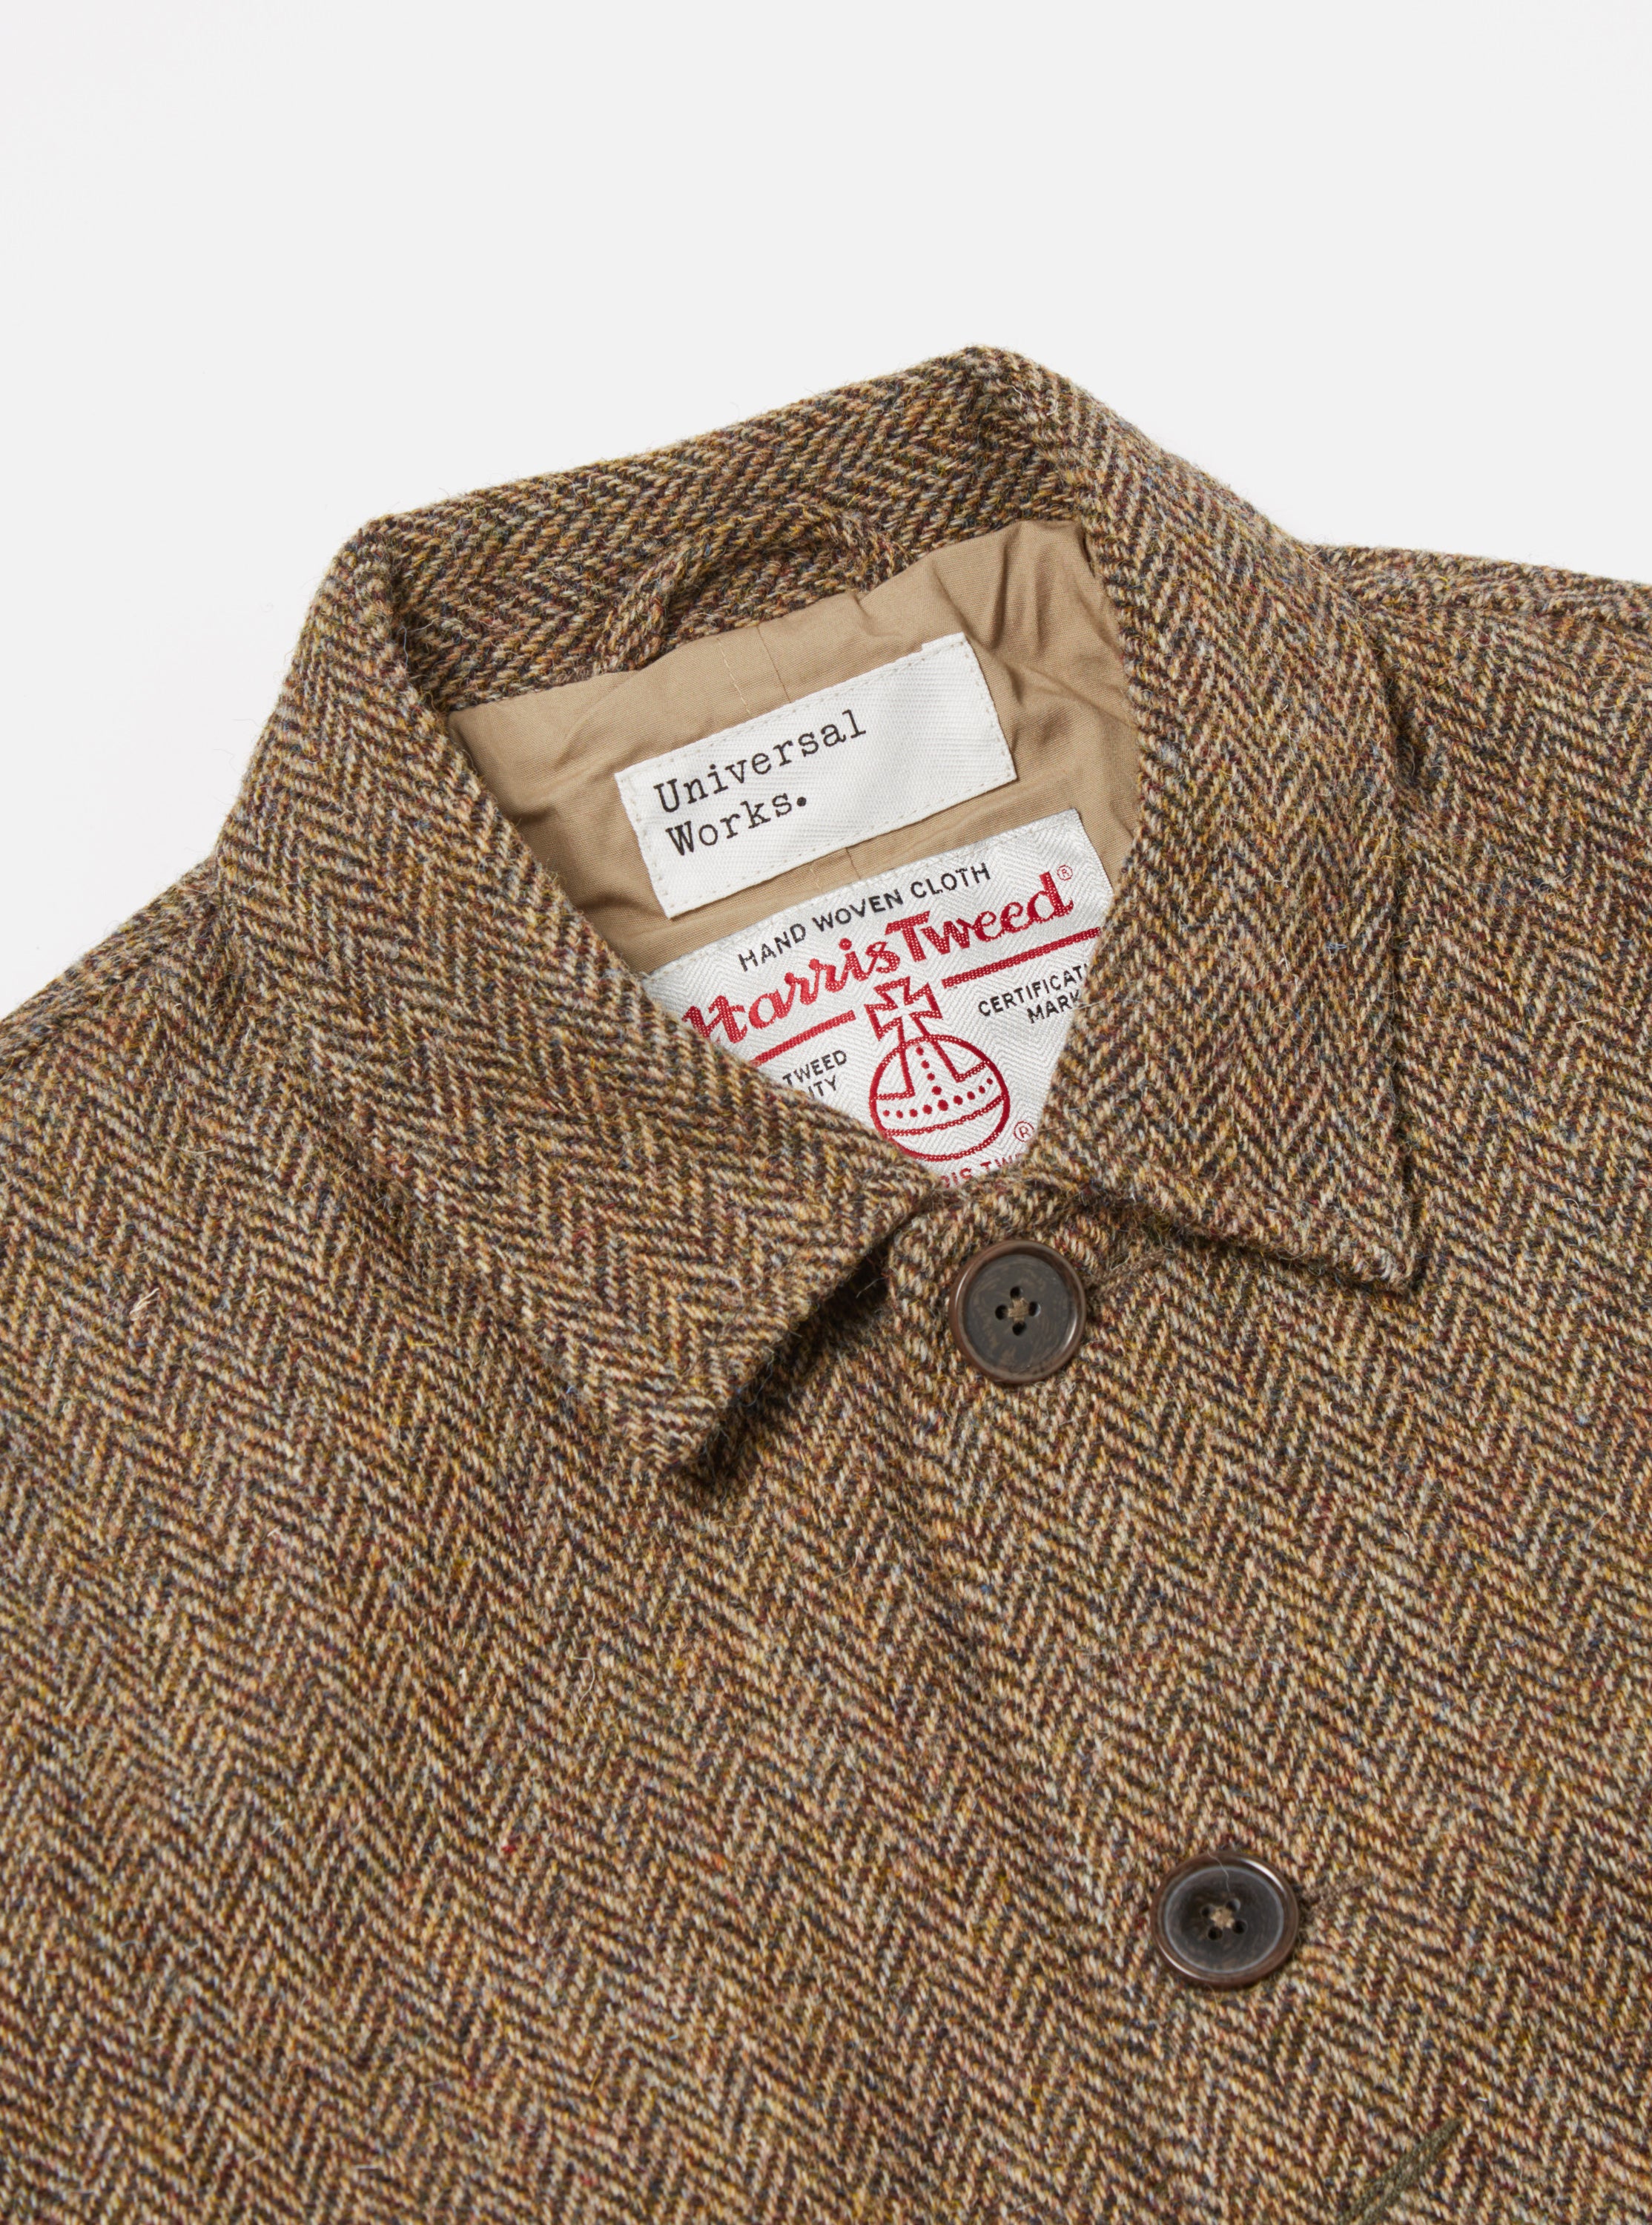 Universal Works Bakers Jacket in Brown Herringbone Harris Tweed